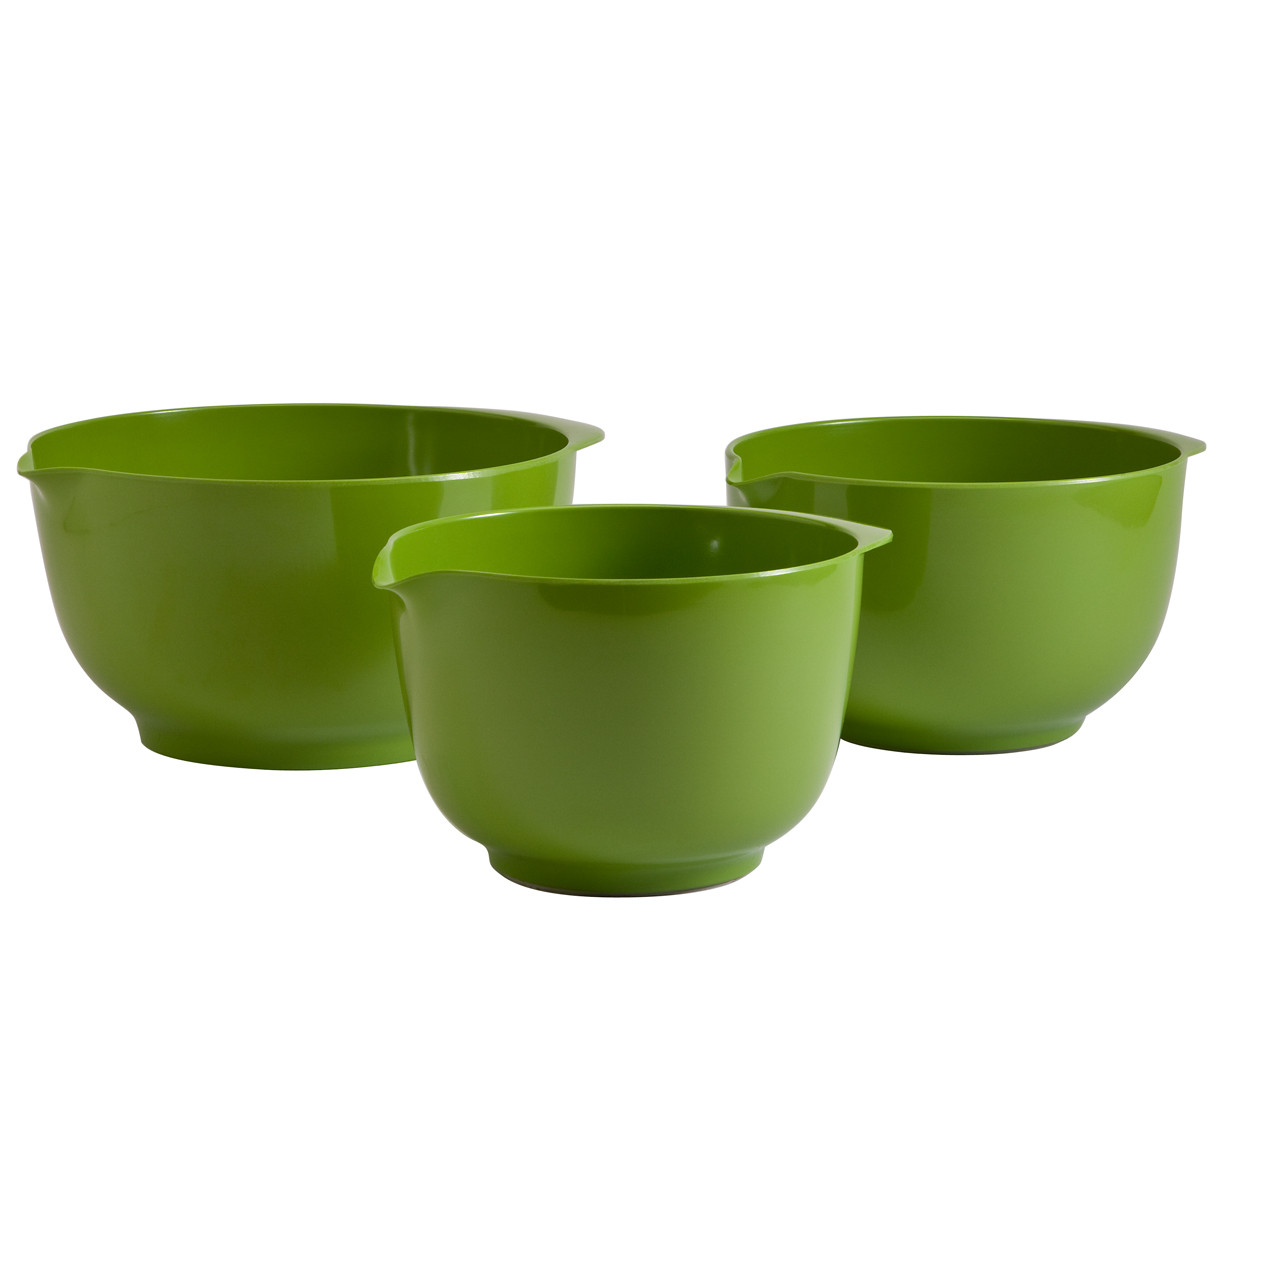 wholesale 6 piece melamine mixing bowls